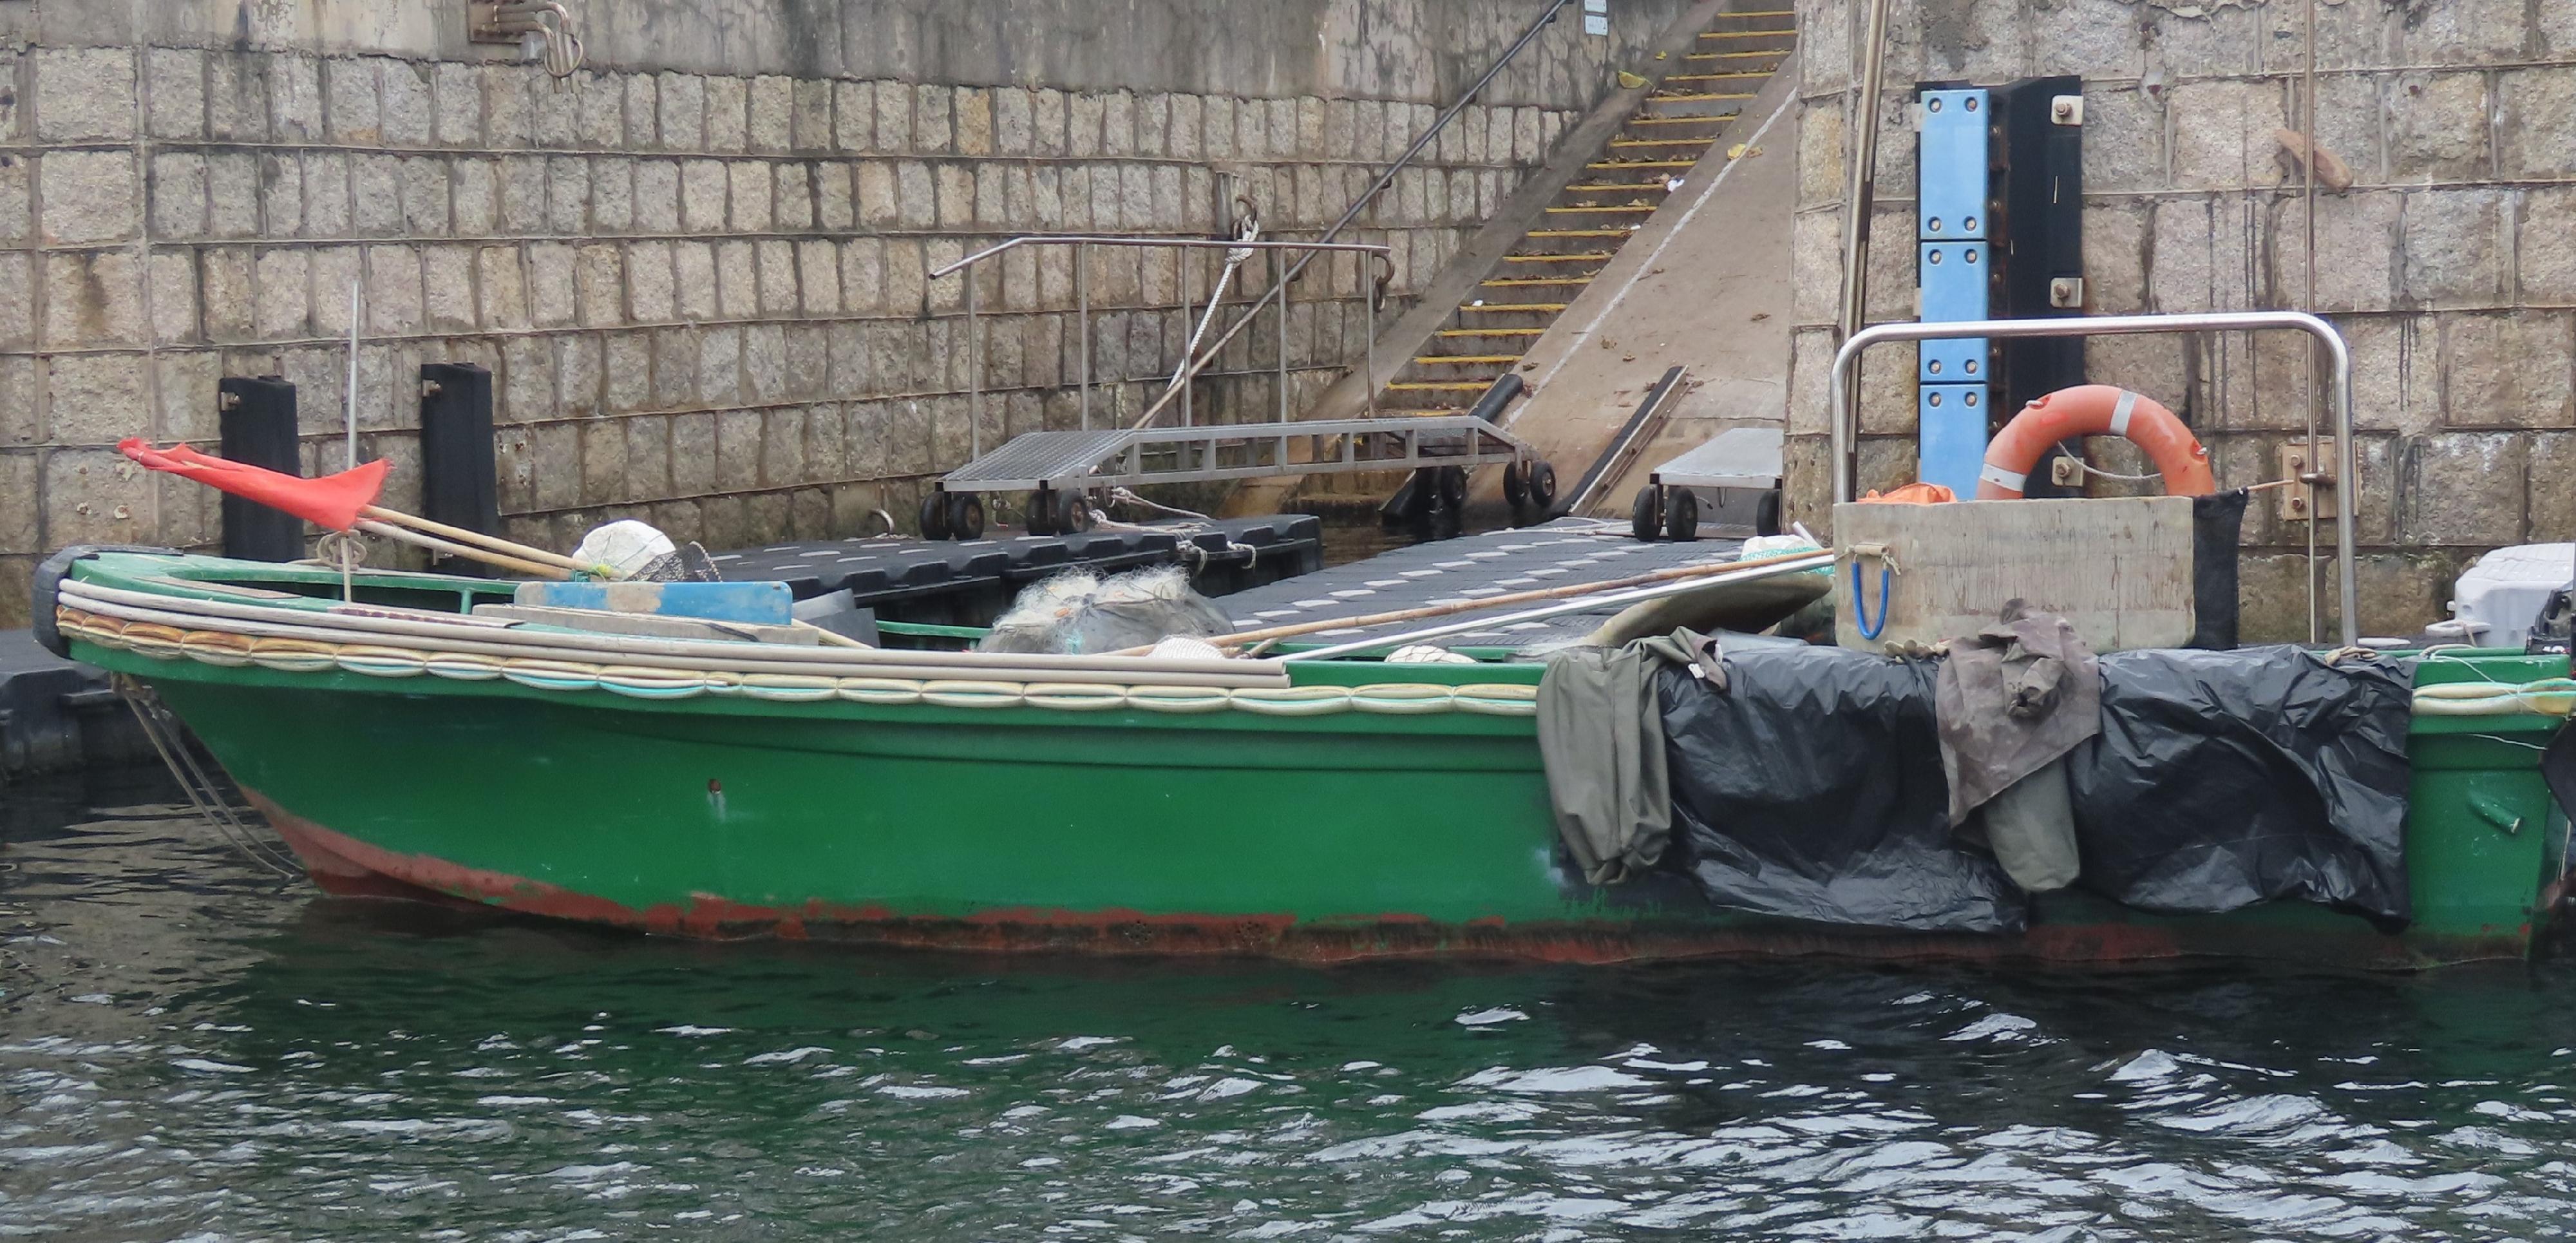 兩名內地漁民早前在香港東北面石牛洲以東水域非法捕魚，被控違反《漁業保護條例》（第171章）（《條例》），今日（四月十一日）被法庭裁定罪名成立。圖示該內地漁船。